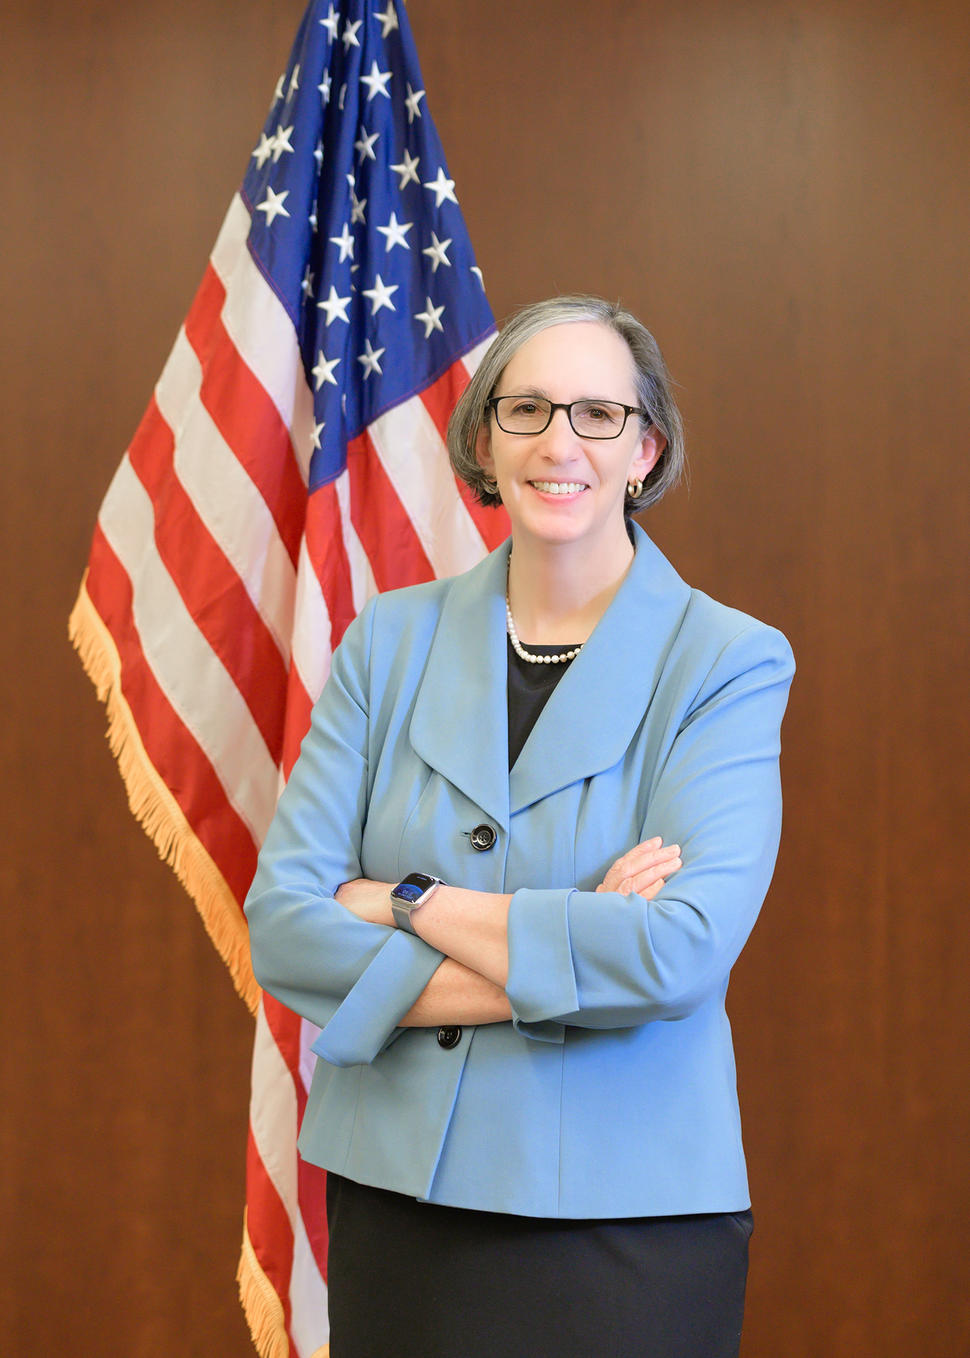 La directora del Instituto Nacional del Cáncer, la doctora Rathmell, se para frente a la bandera de los EE. UU., sonriendo con los brazos cruzados.